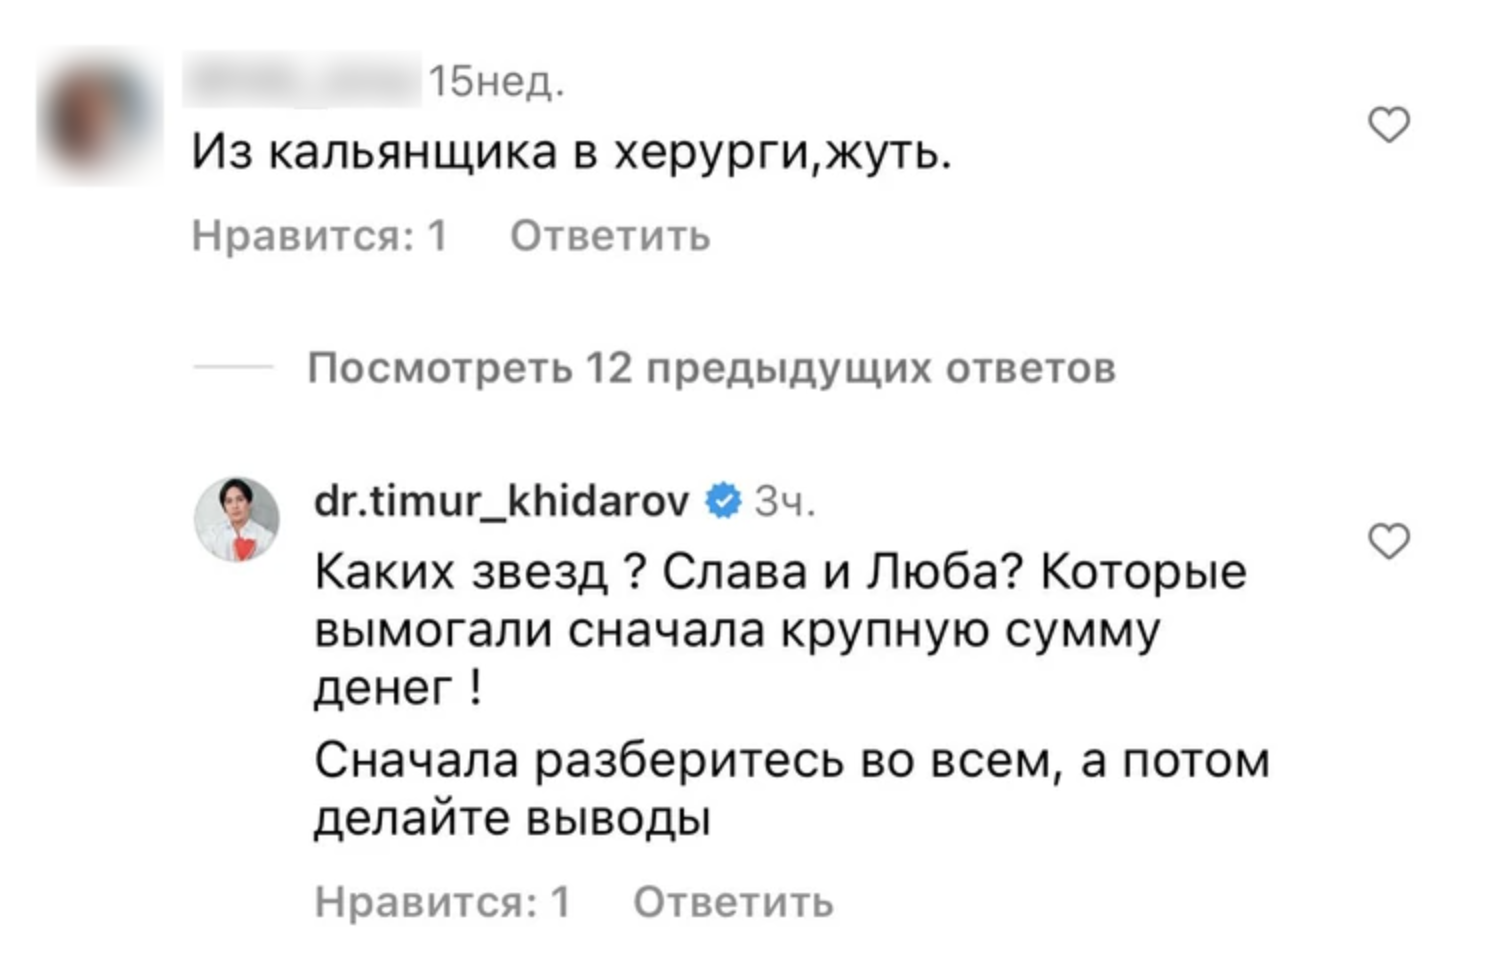 Хайдаров не считает себя виноватым. Фото © Instagram (соцсеть запрещена в РФ; принадлежит корпорации Meta, которая признана в РФ экстремистской) / dr.timur_khidarov